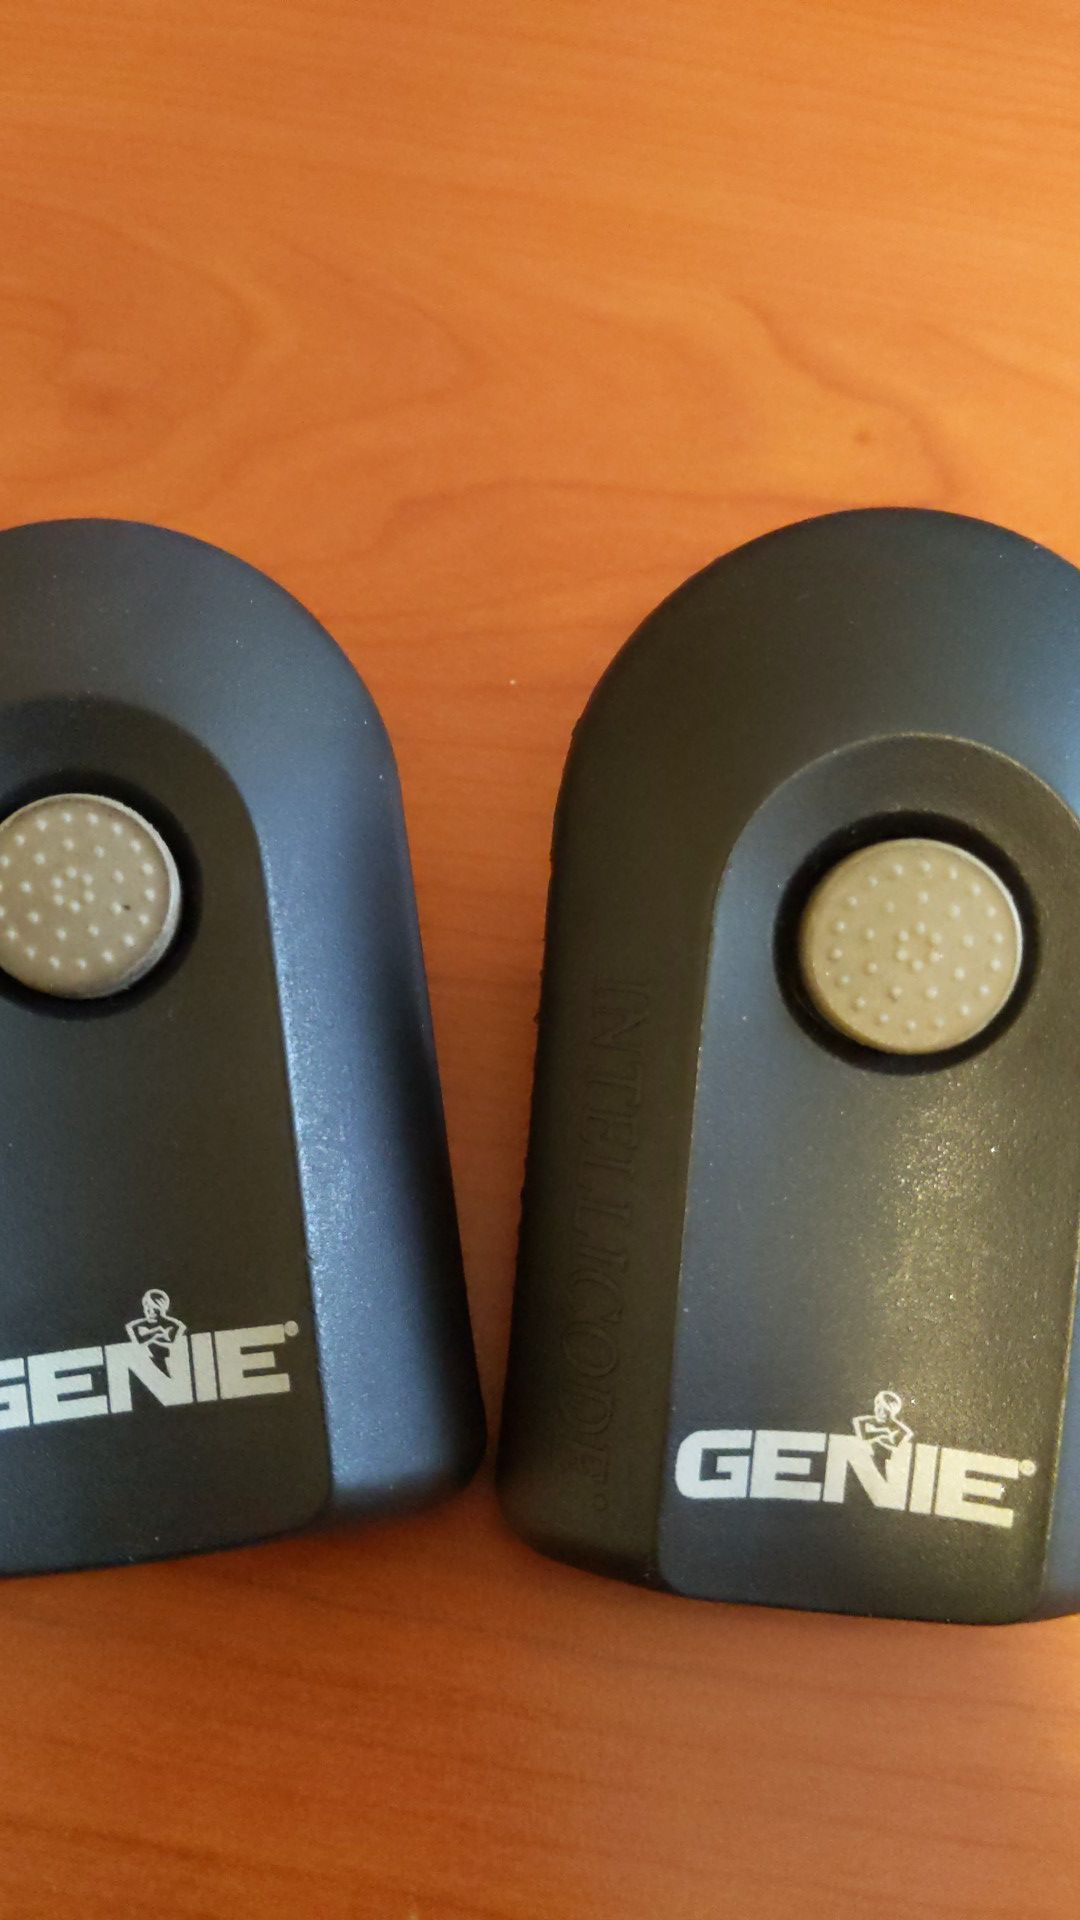 Genie ACSCTG Type 1 garage door opener remotes